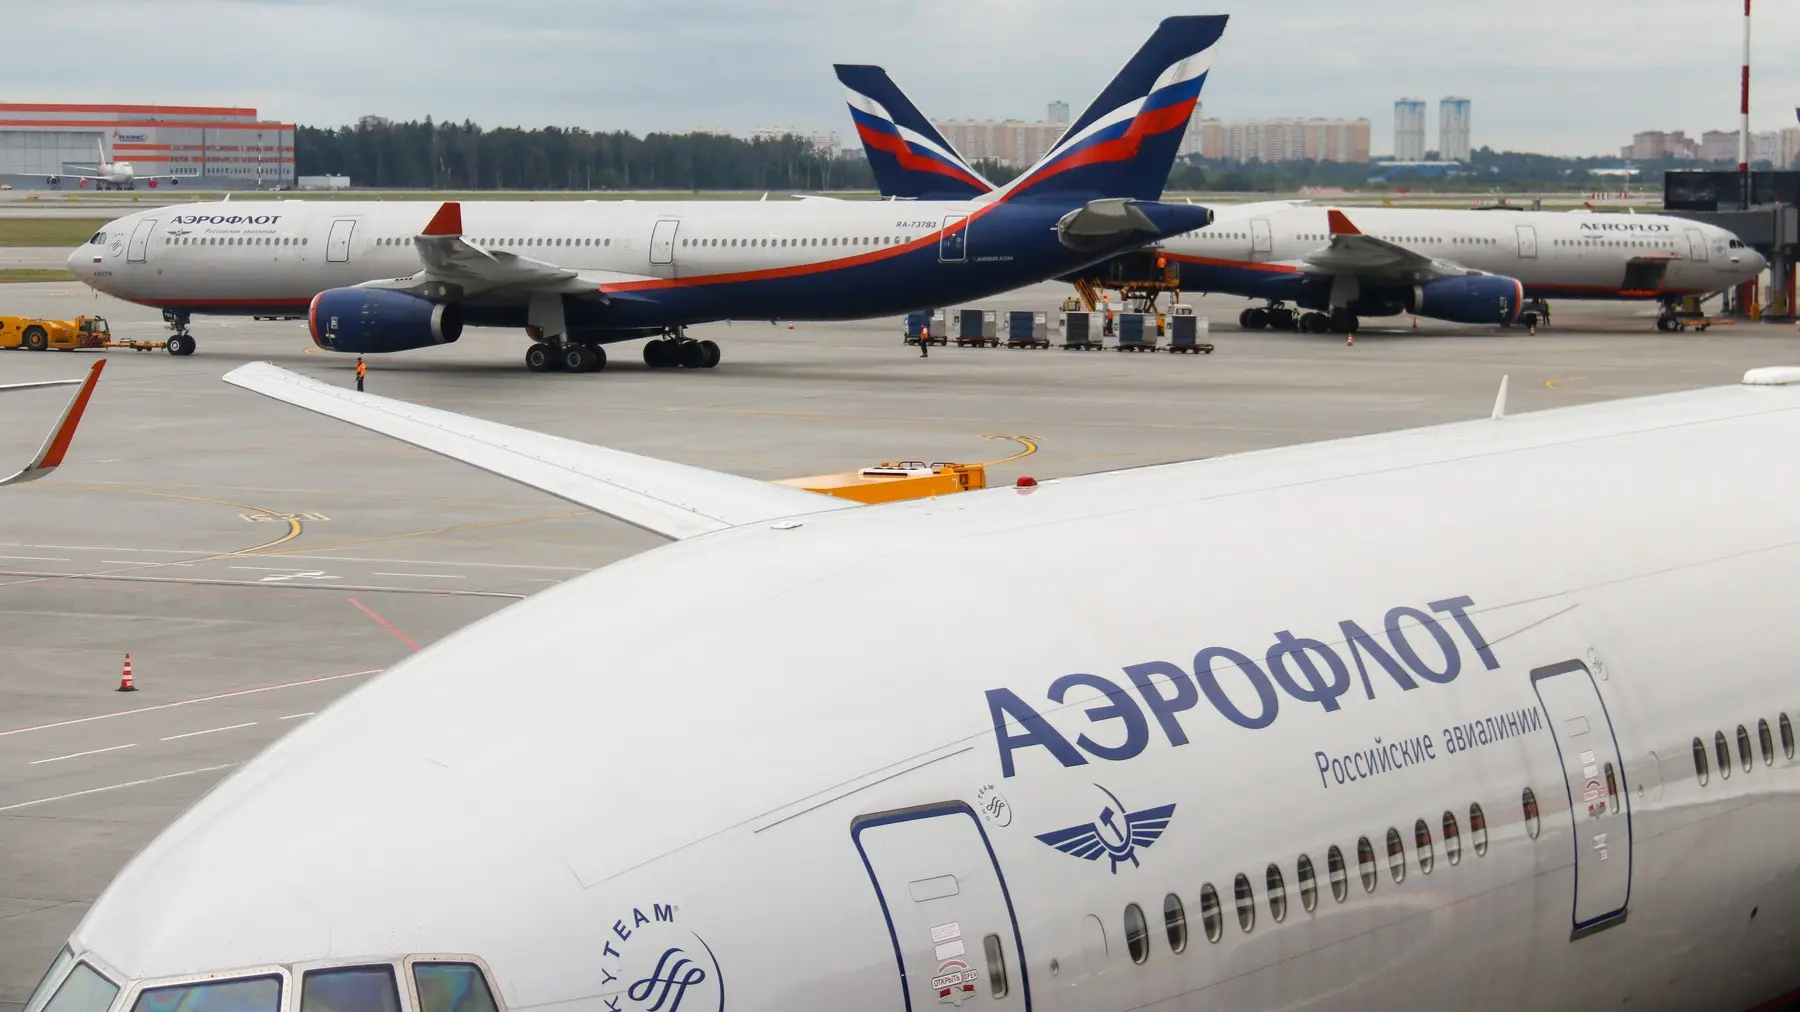 aerodrom šeremetjevo, 8 avg 2022 - ruski avioni, putnički avioni, aeroflot - foto profimedia-6561edd014cbd.webp